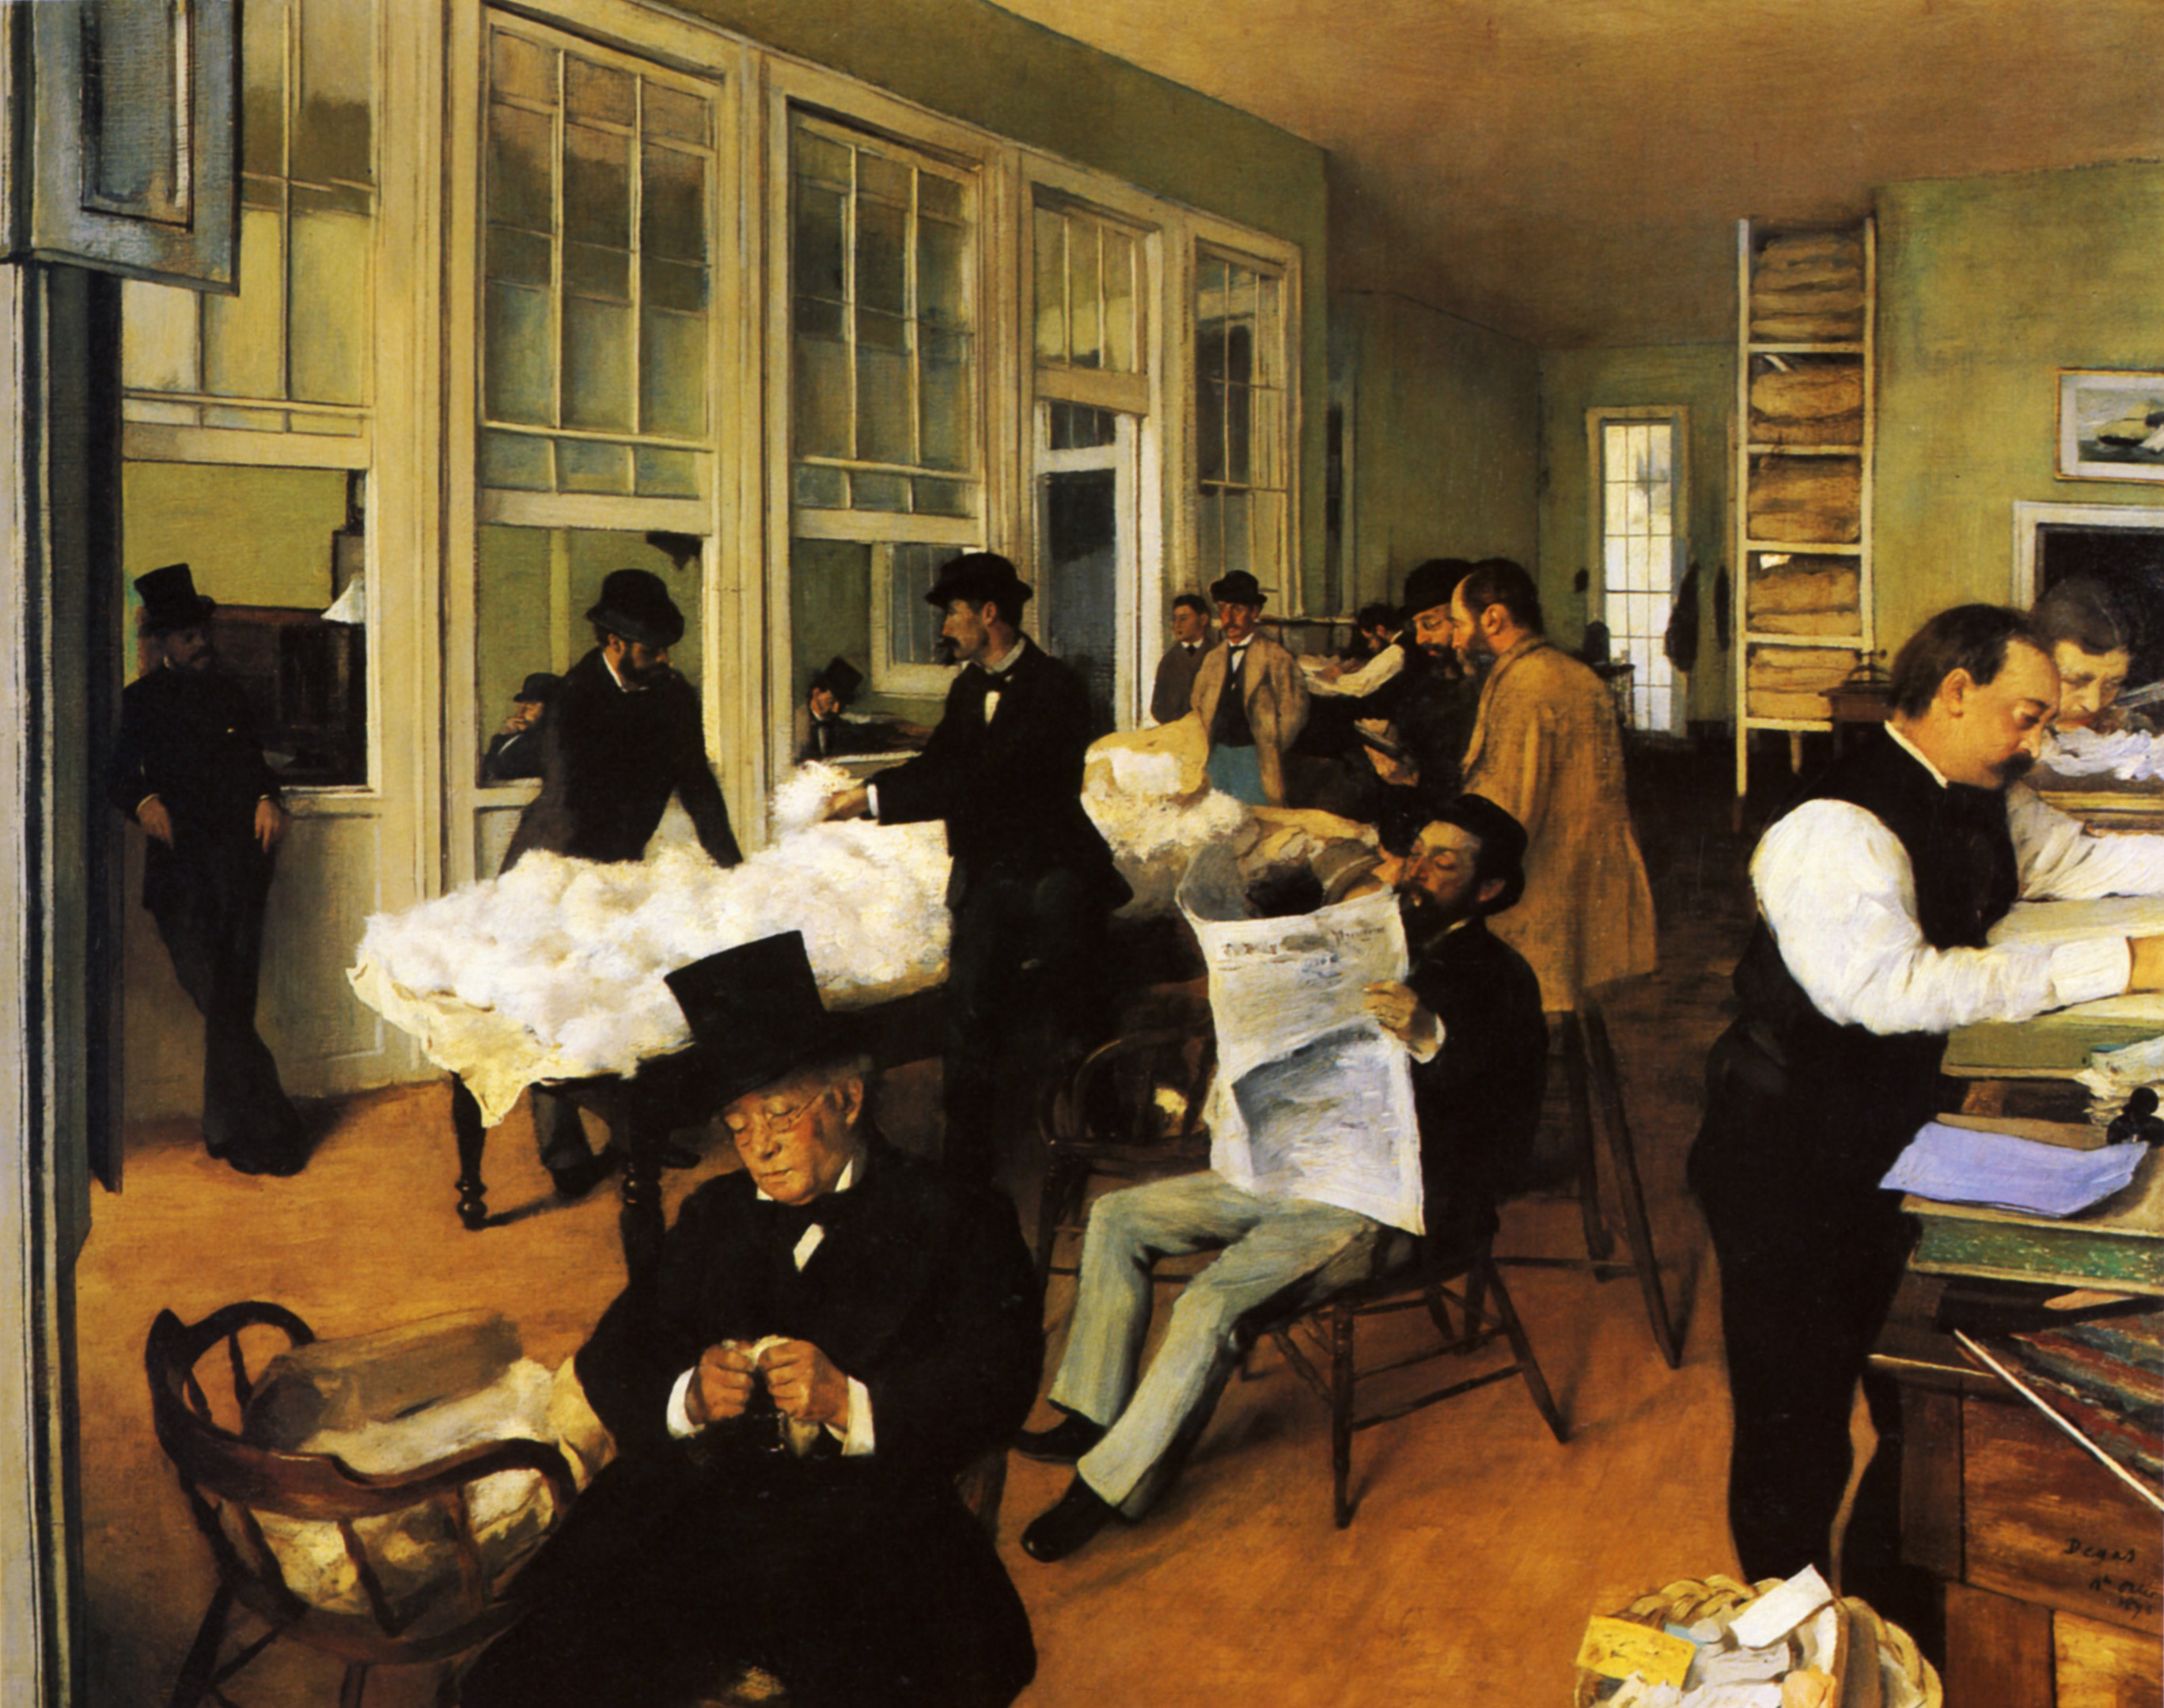 A Cotton Office in New Orleans by Edgar Degas - 1873 - 73 × 92 cm Musée des beaux-arts de Pau